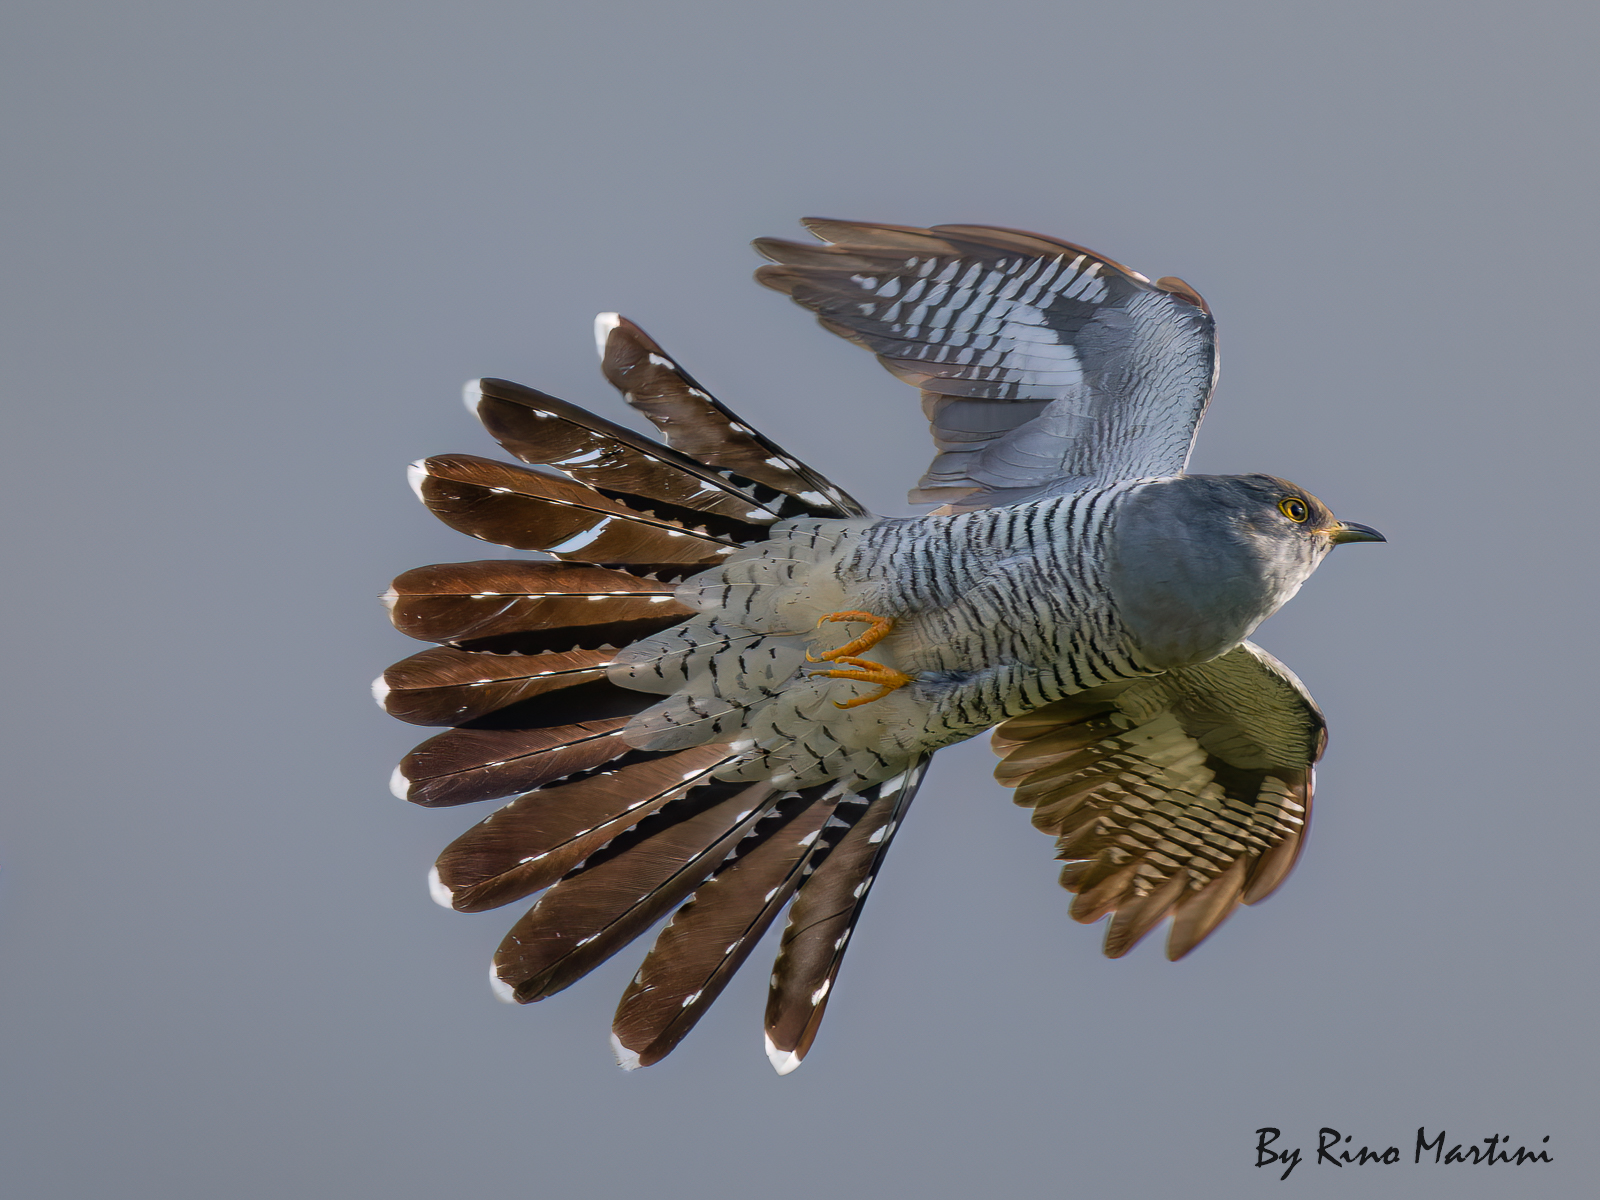 The Cuckoo in Flight...